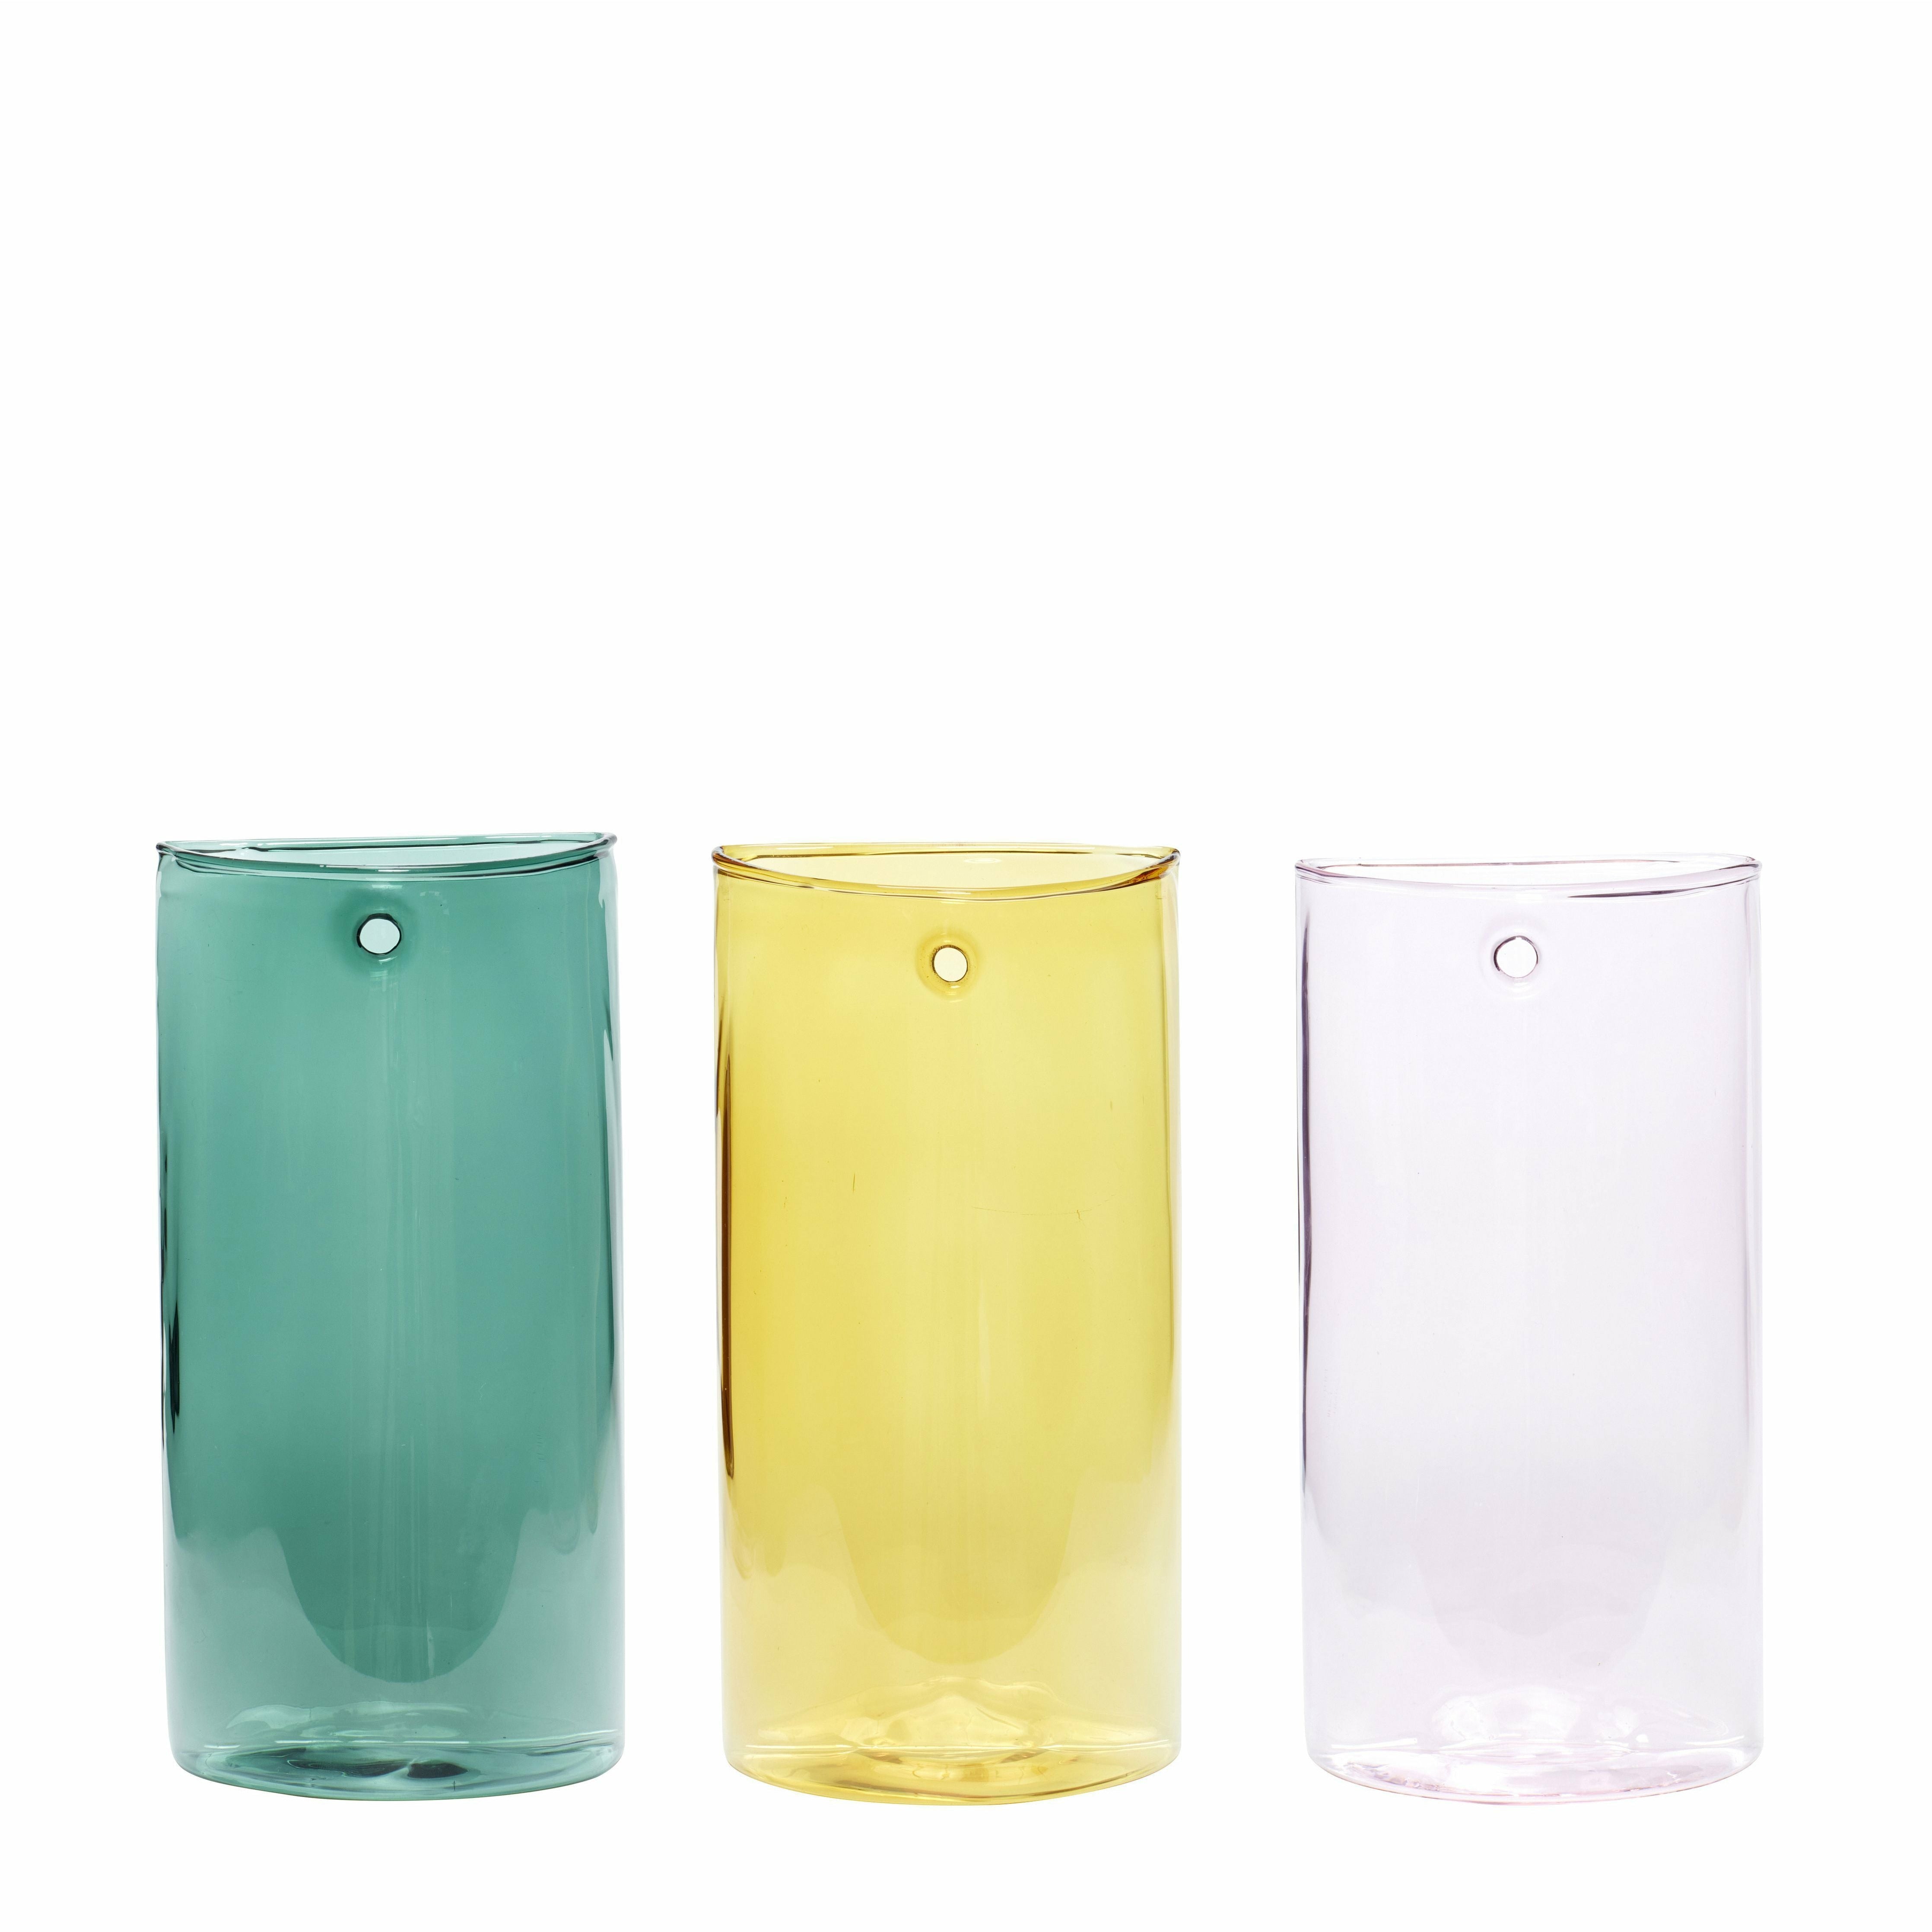 Hübsch popsicle wazon szklany różowy/żółty/zielony zestaw 3